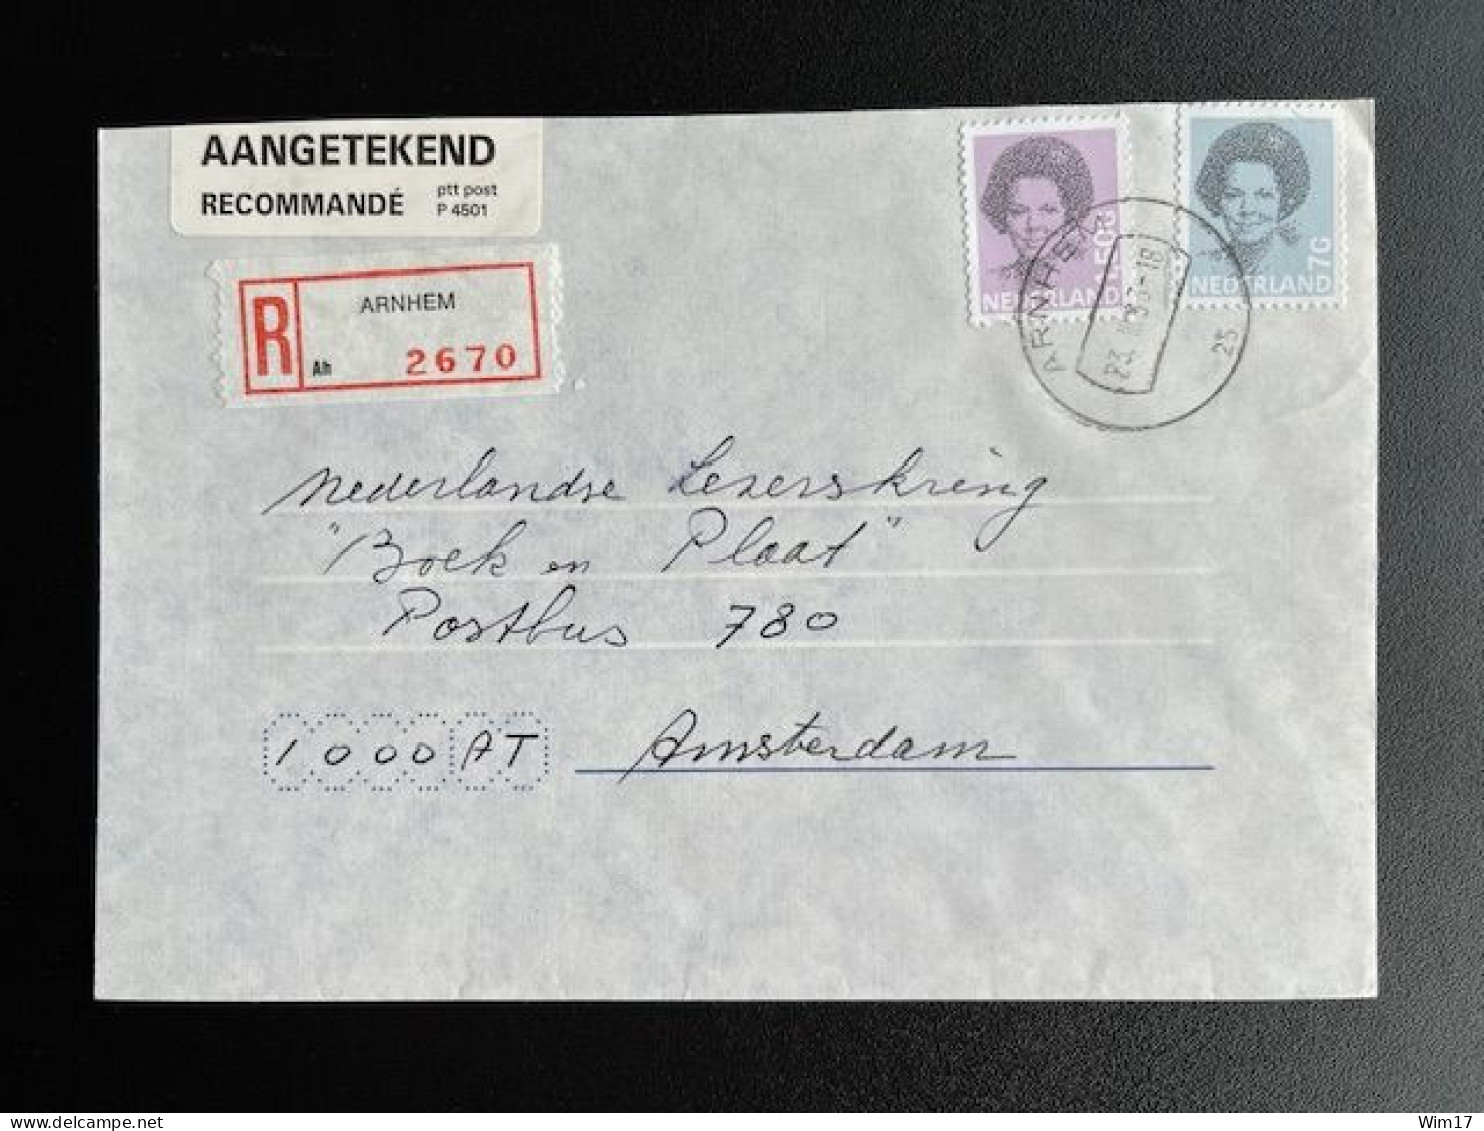 NETHERLANDS 1993 REGISTERED LETTER ARNHEM TO AMSTERDAM 23-03-1993 NEDERLAND AANGETEKEND - Lettres & Documents